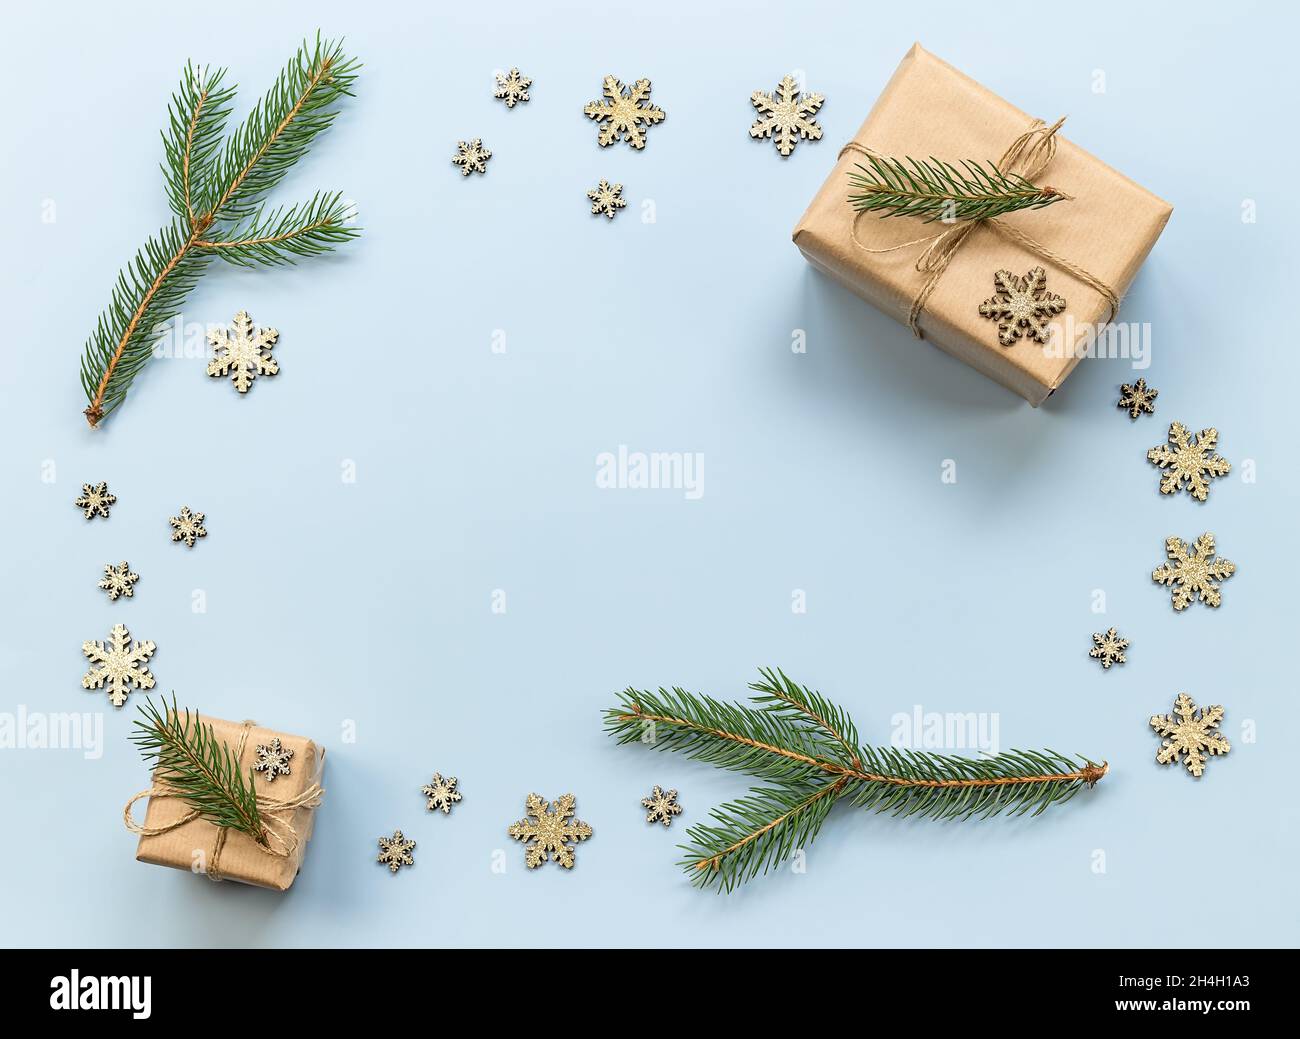 Weihnachtskomposition. Neujahr, Weihnachtsgeschenke, Tannenzweige,  dekorative Schneeflocken auf dem blauen Hintergrund Stockfotografie - Alamy